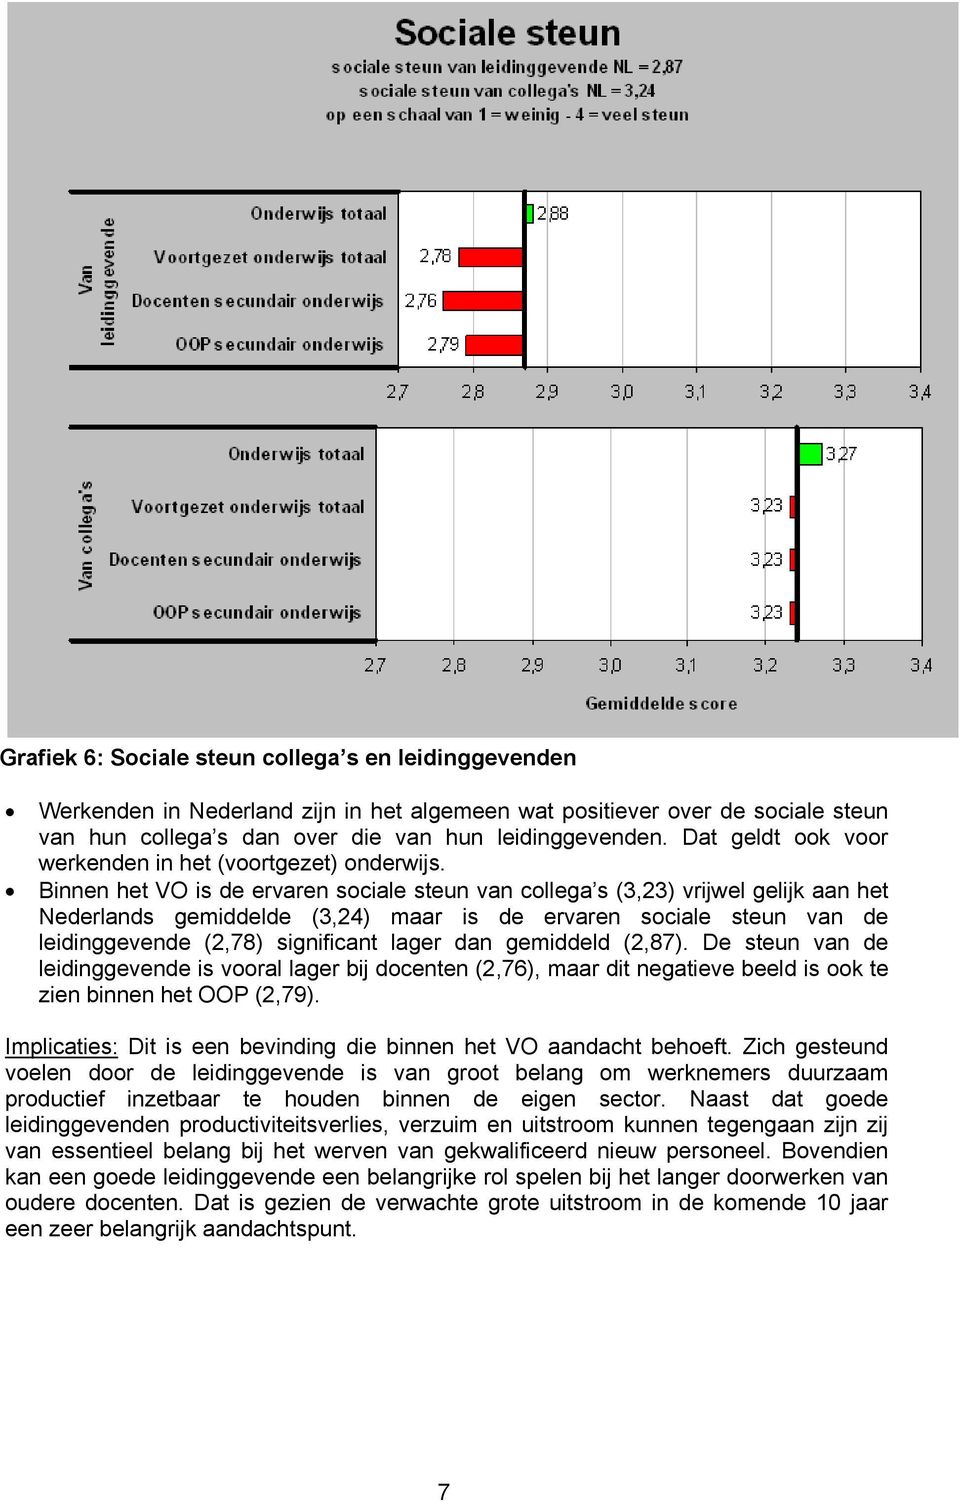 Binnen het VO is de ervaren sociale steun van collega s (3,23) vrijwel gelijk aan het Nederlands gemiddelde (3,24) maar is de ervaren sociale steun van de leidinggevende (2,78) significant lager dan